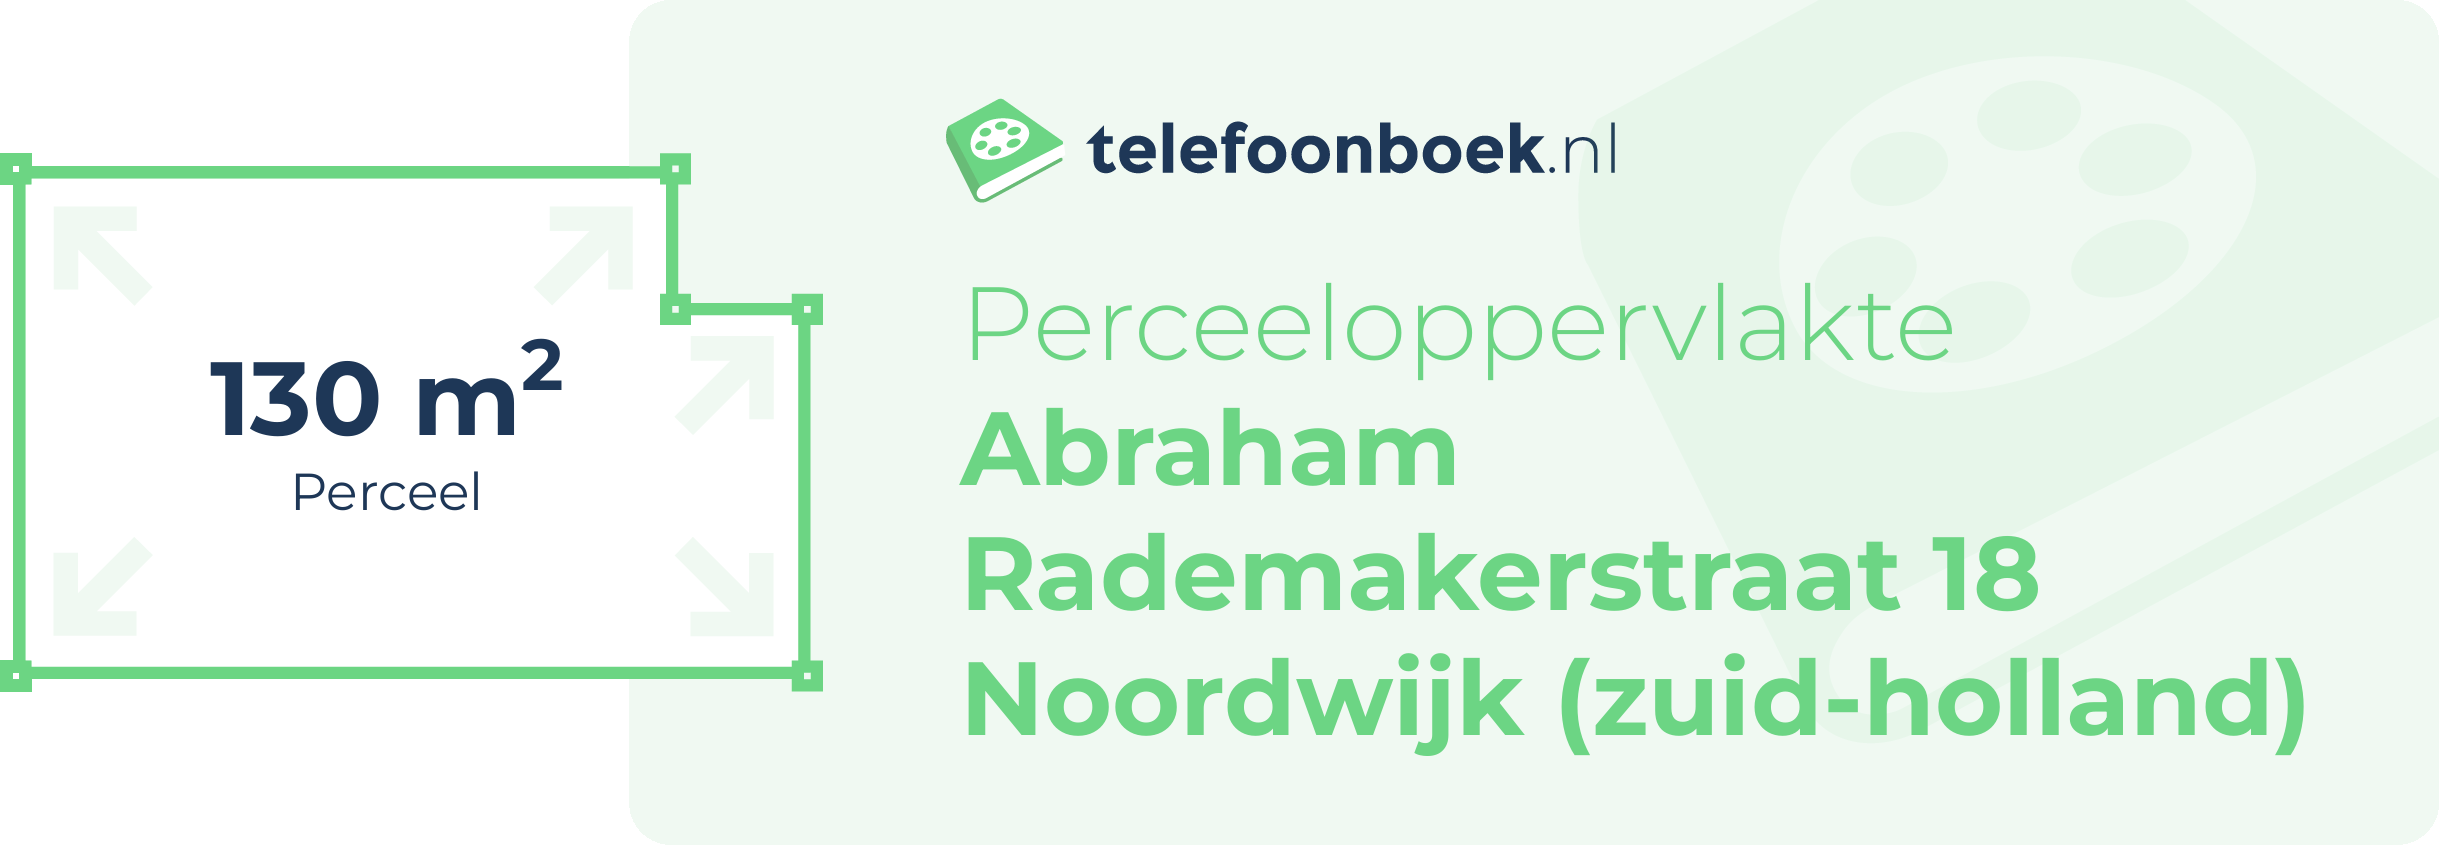 Perceeloppervlakte Abraham Rademakerstraat 18 Noordwijk (Zuid-Holland)